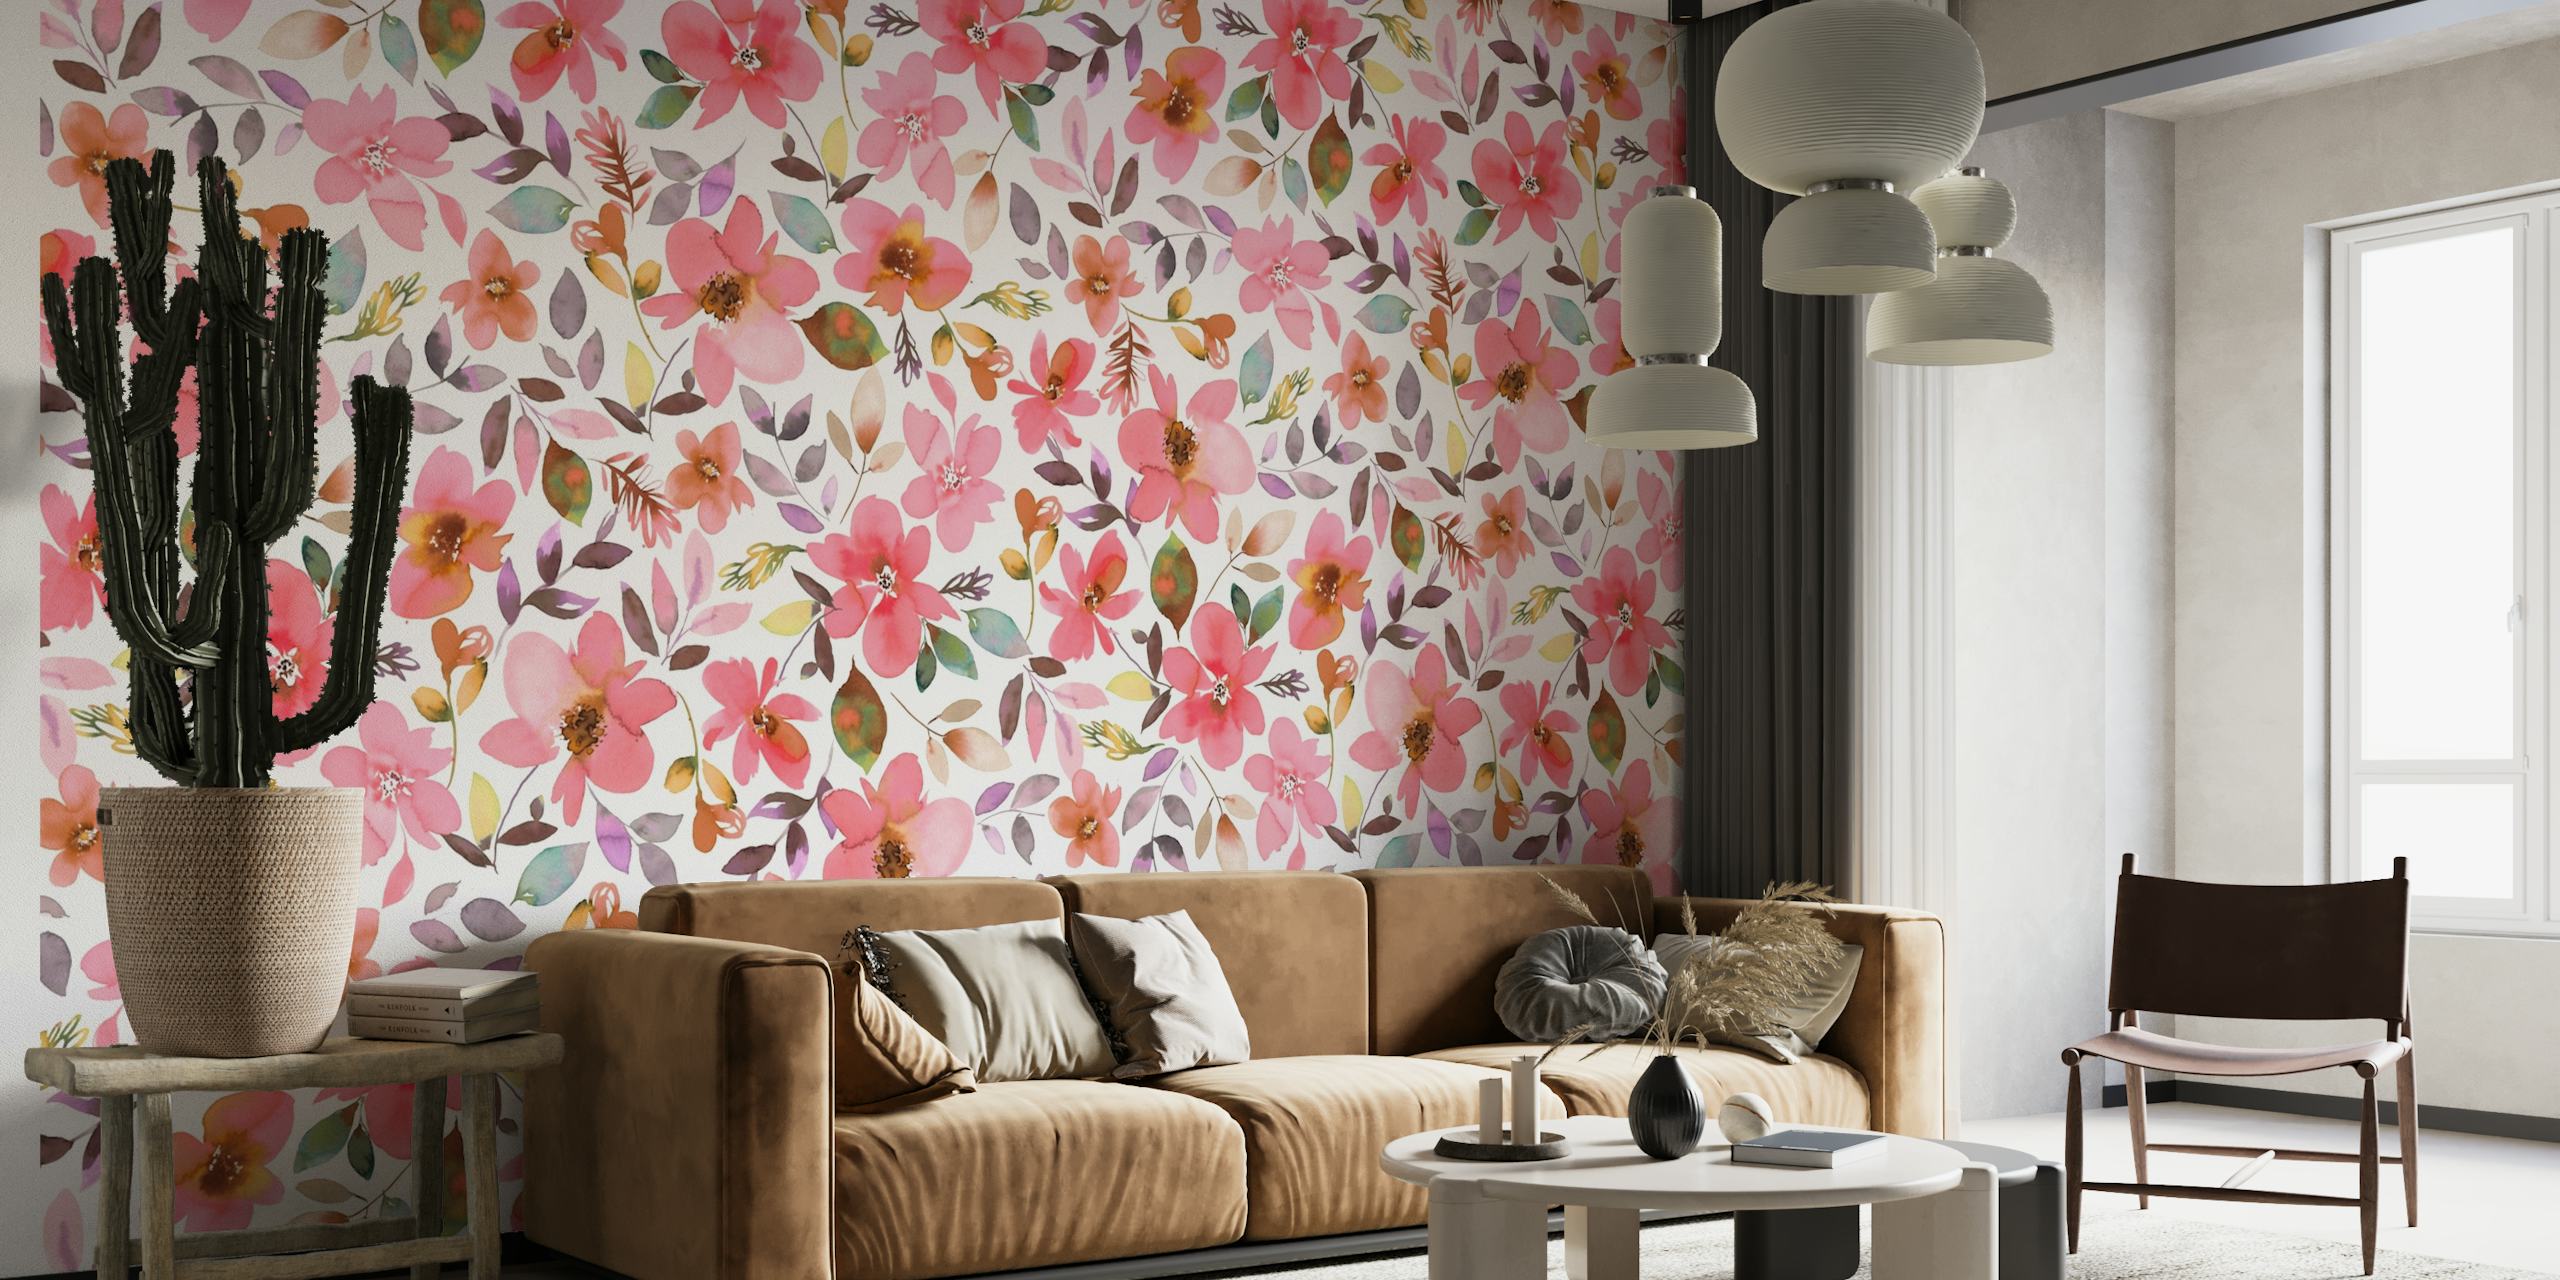 Ein farbenfrohes Wandbild mit Korallenblumen und tropischen Pflanzen, das ein lebendiges Sommerthema schafft.